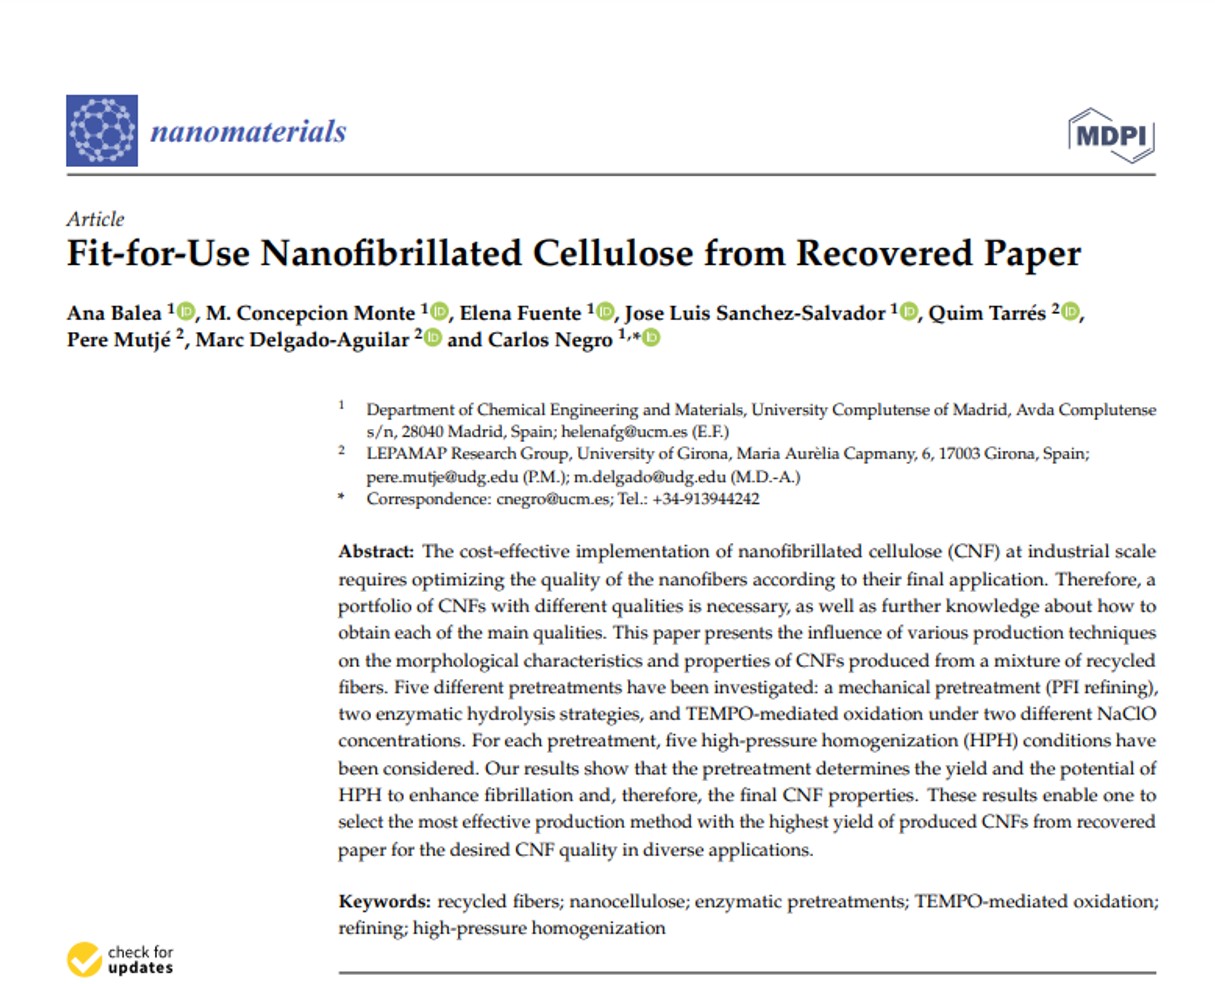 Miembros del grupo de investigación de VALORCON publican el artículo "Fit-for-Use Nanofibrillated Cellulose from Recovered Paper" en la revista Nanomaterials